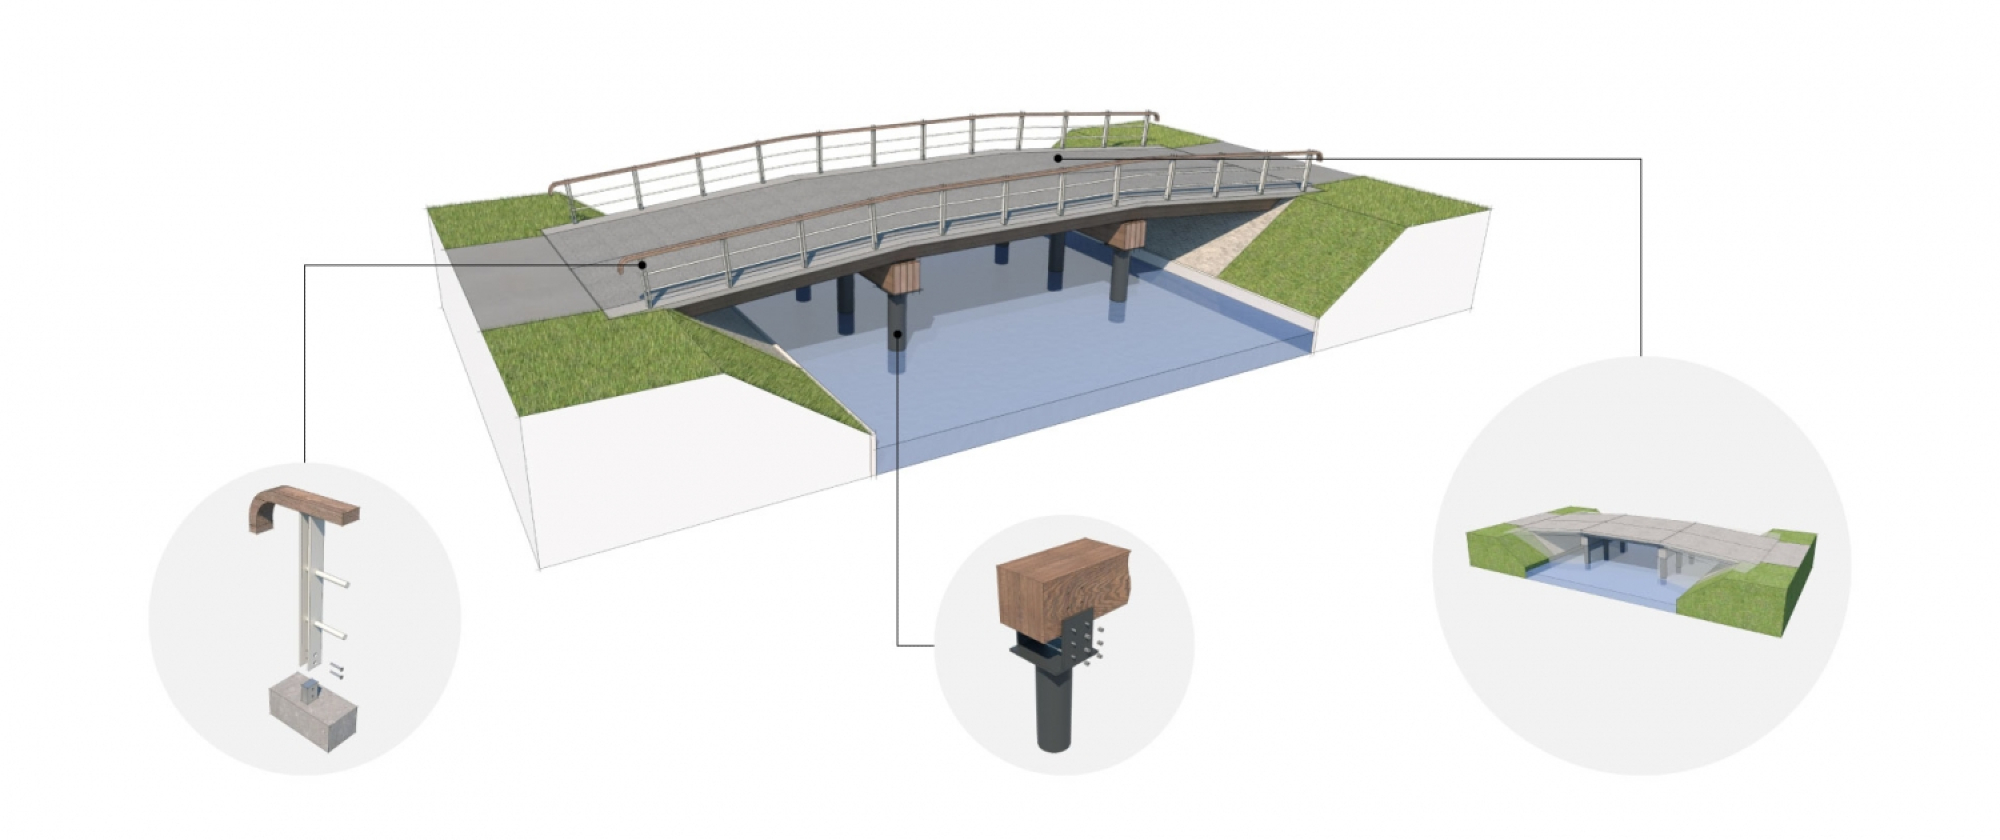 Samen met Knipscheer ontwikkelde ipv Delft de circulaire systeembrug, ontworpen vanuit de IFD-principes. De brug is geheel modulair ontworpen en alle onderdelen zijn eenvoudig te vervangen of demonteren. Dit biedt mogelijkheden voor toekomstig hergebruik.